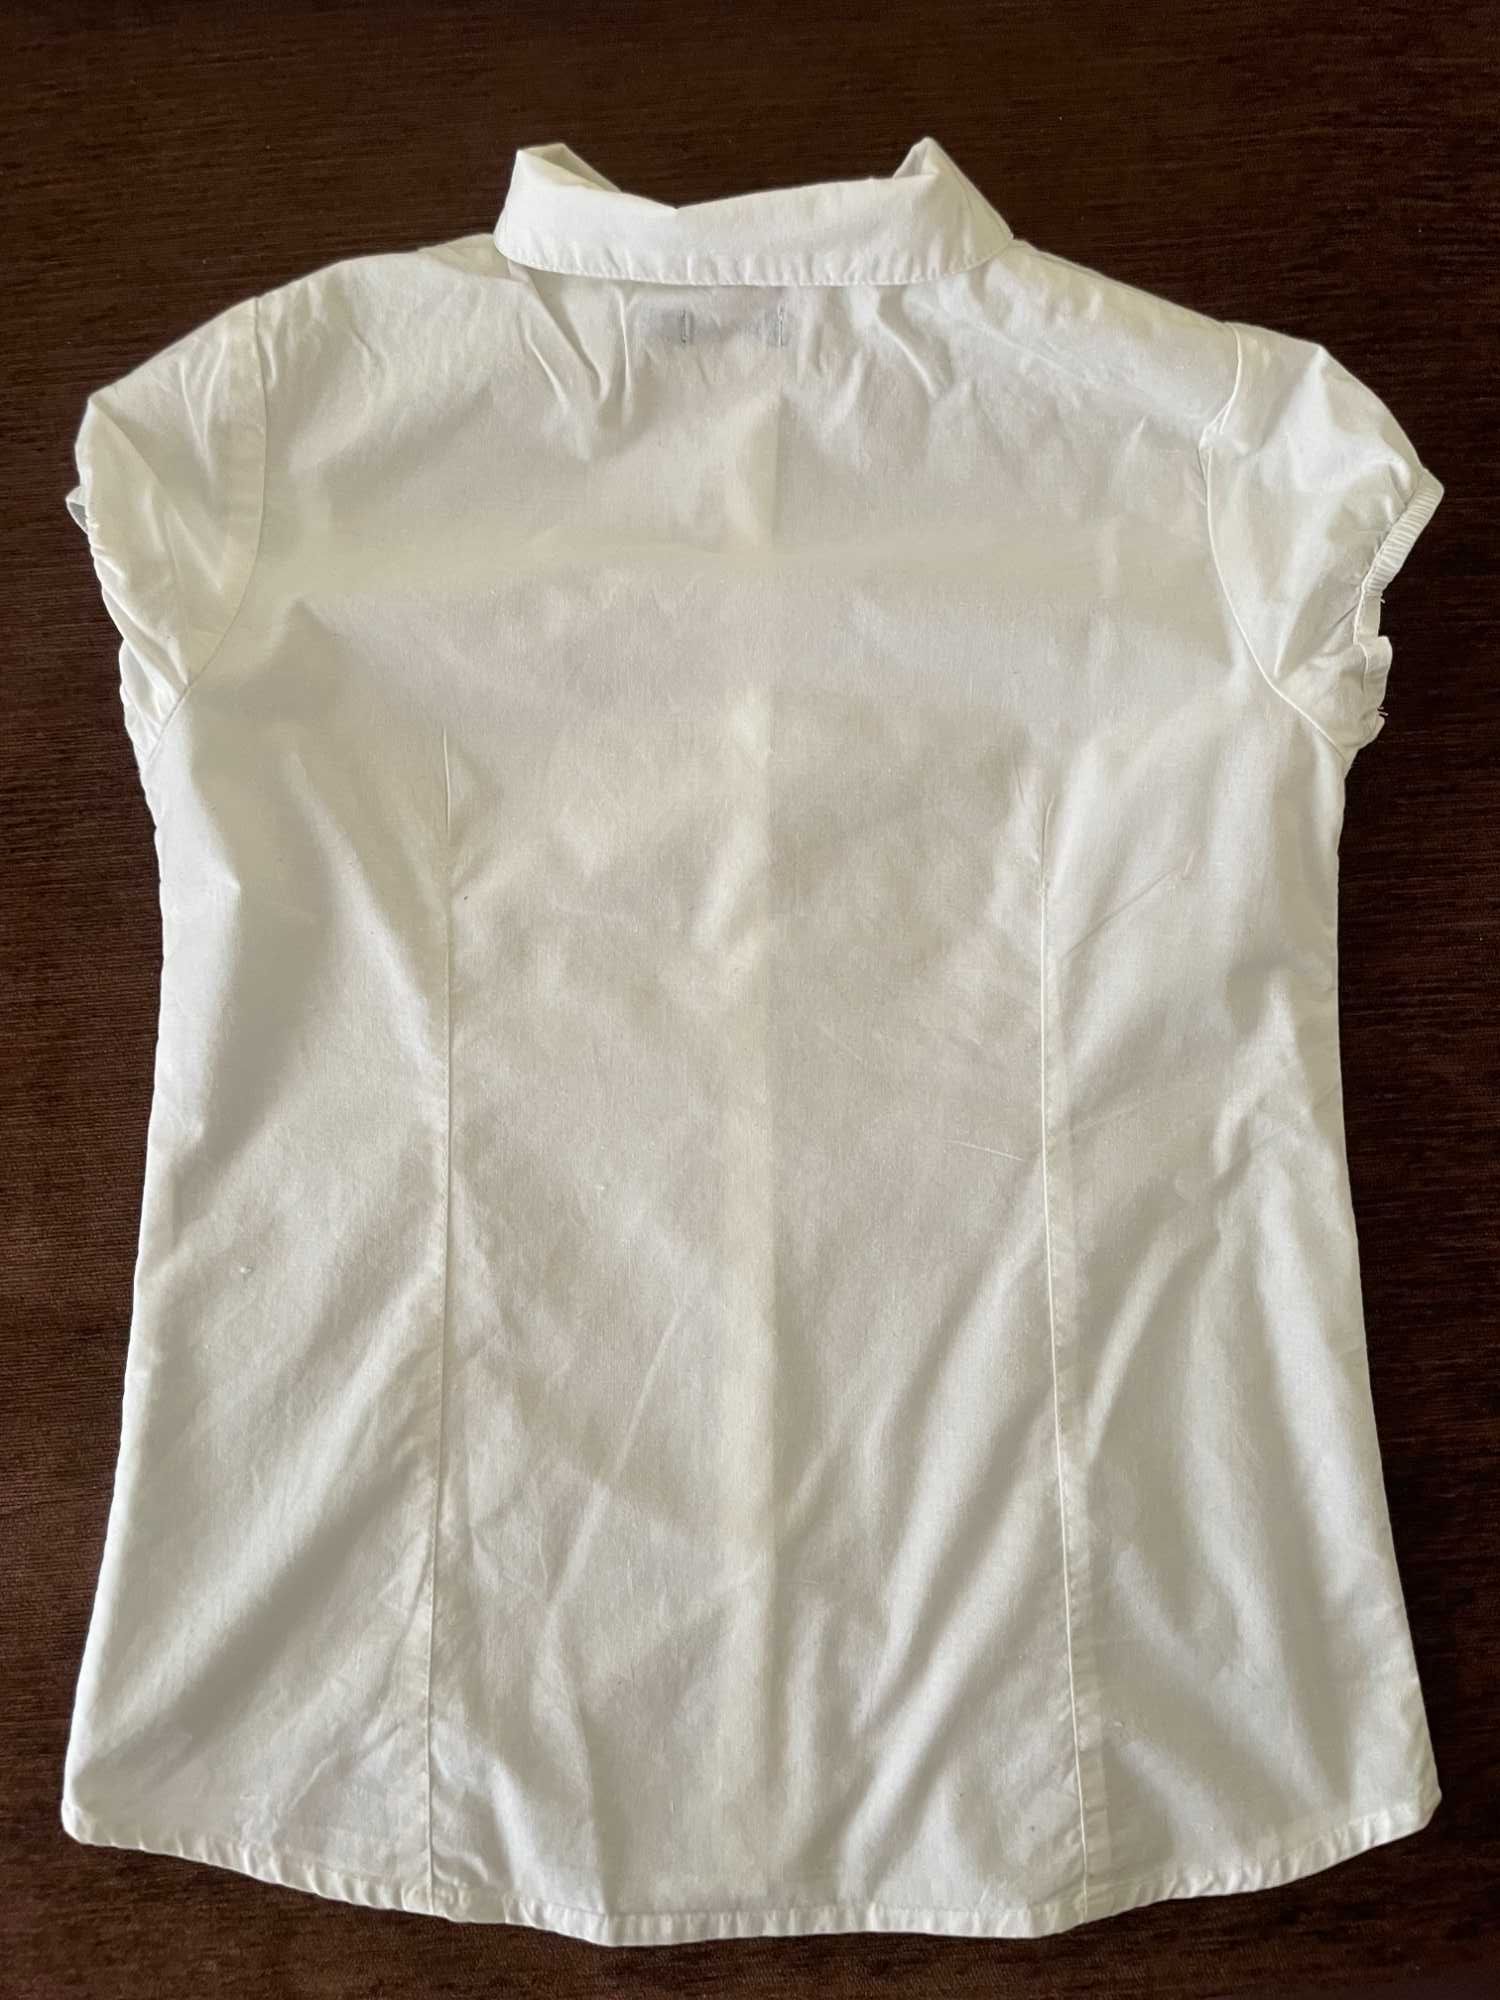 Bluzka, koszula, biała (wizytowa/galowa), krótki rękaw i kołnierzyk